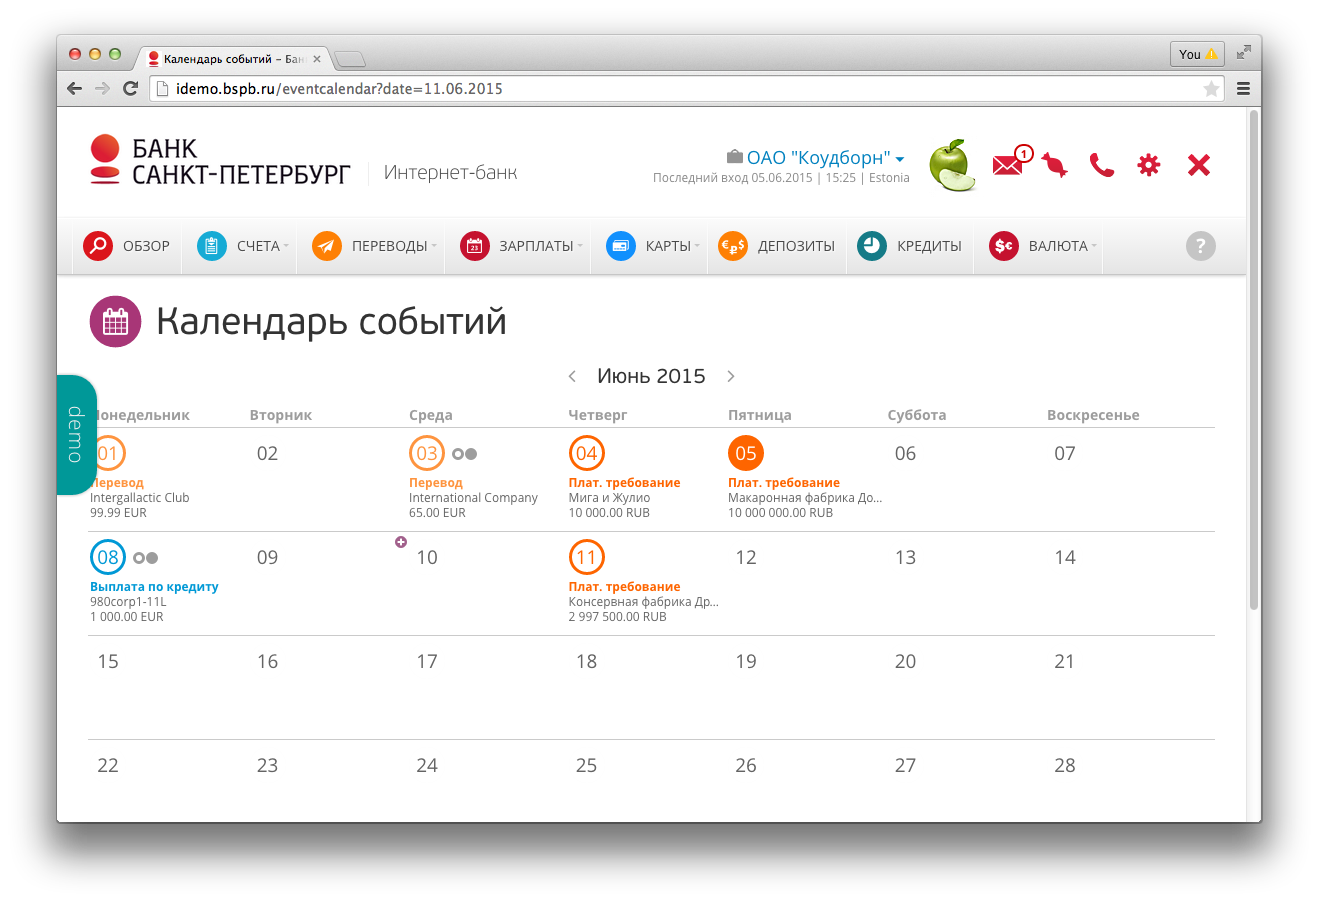 BSPB corporate calendar ru